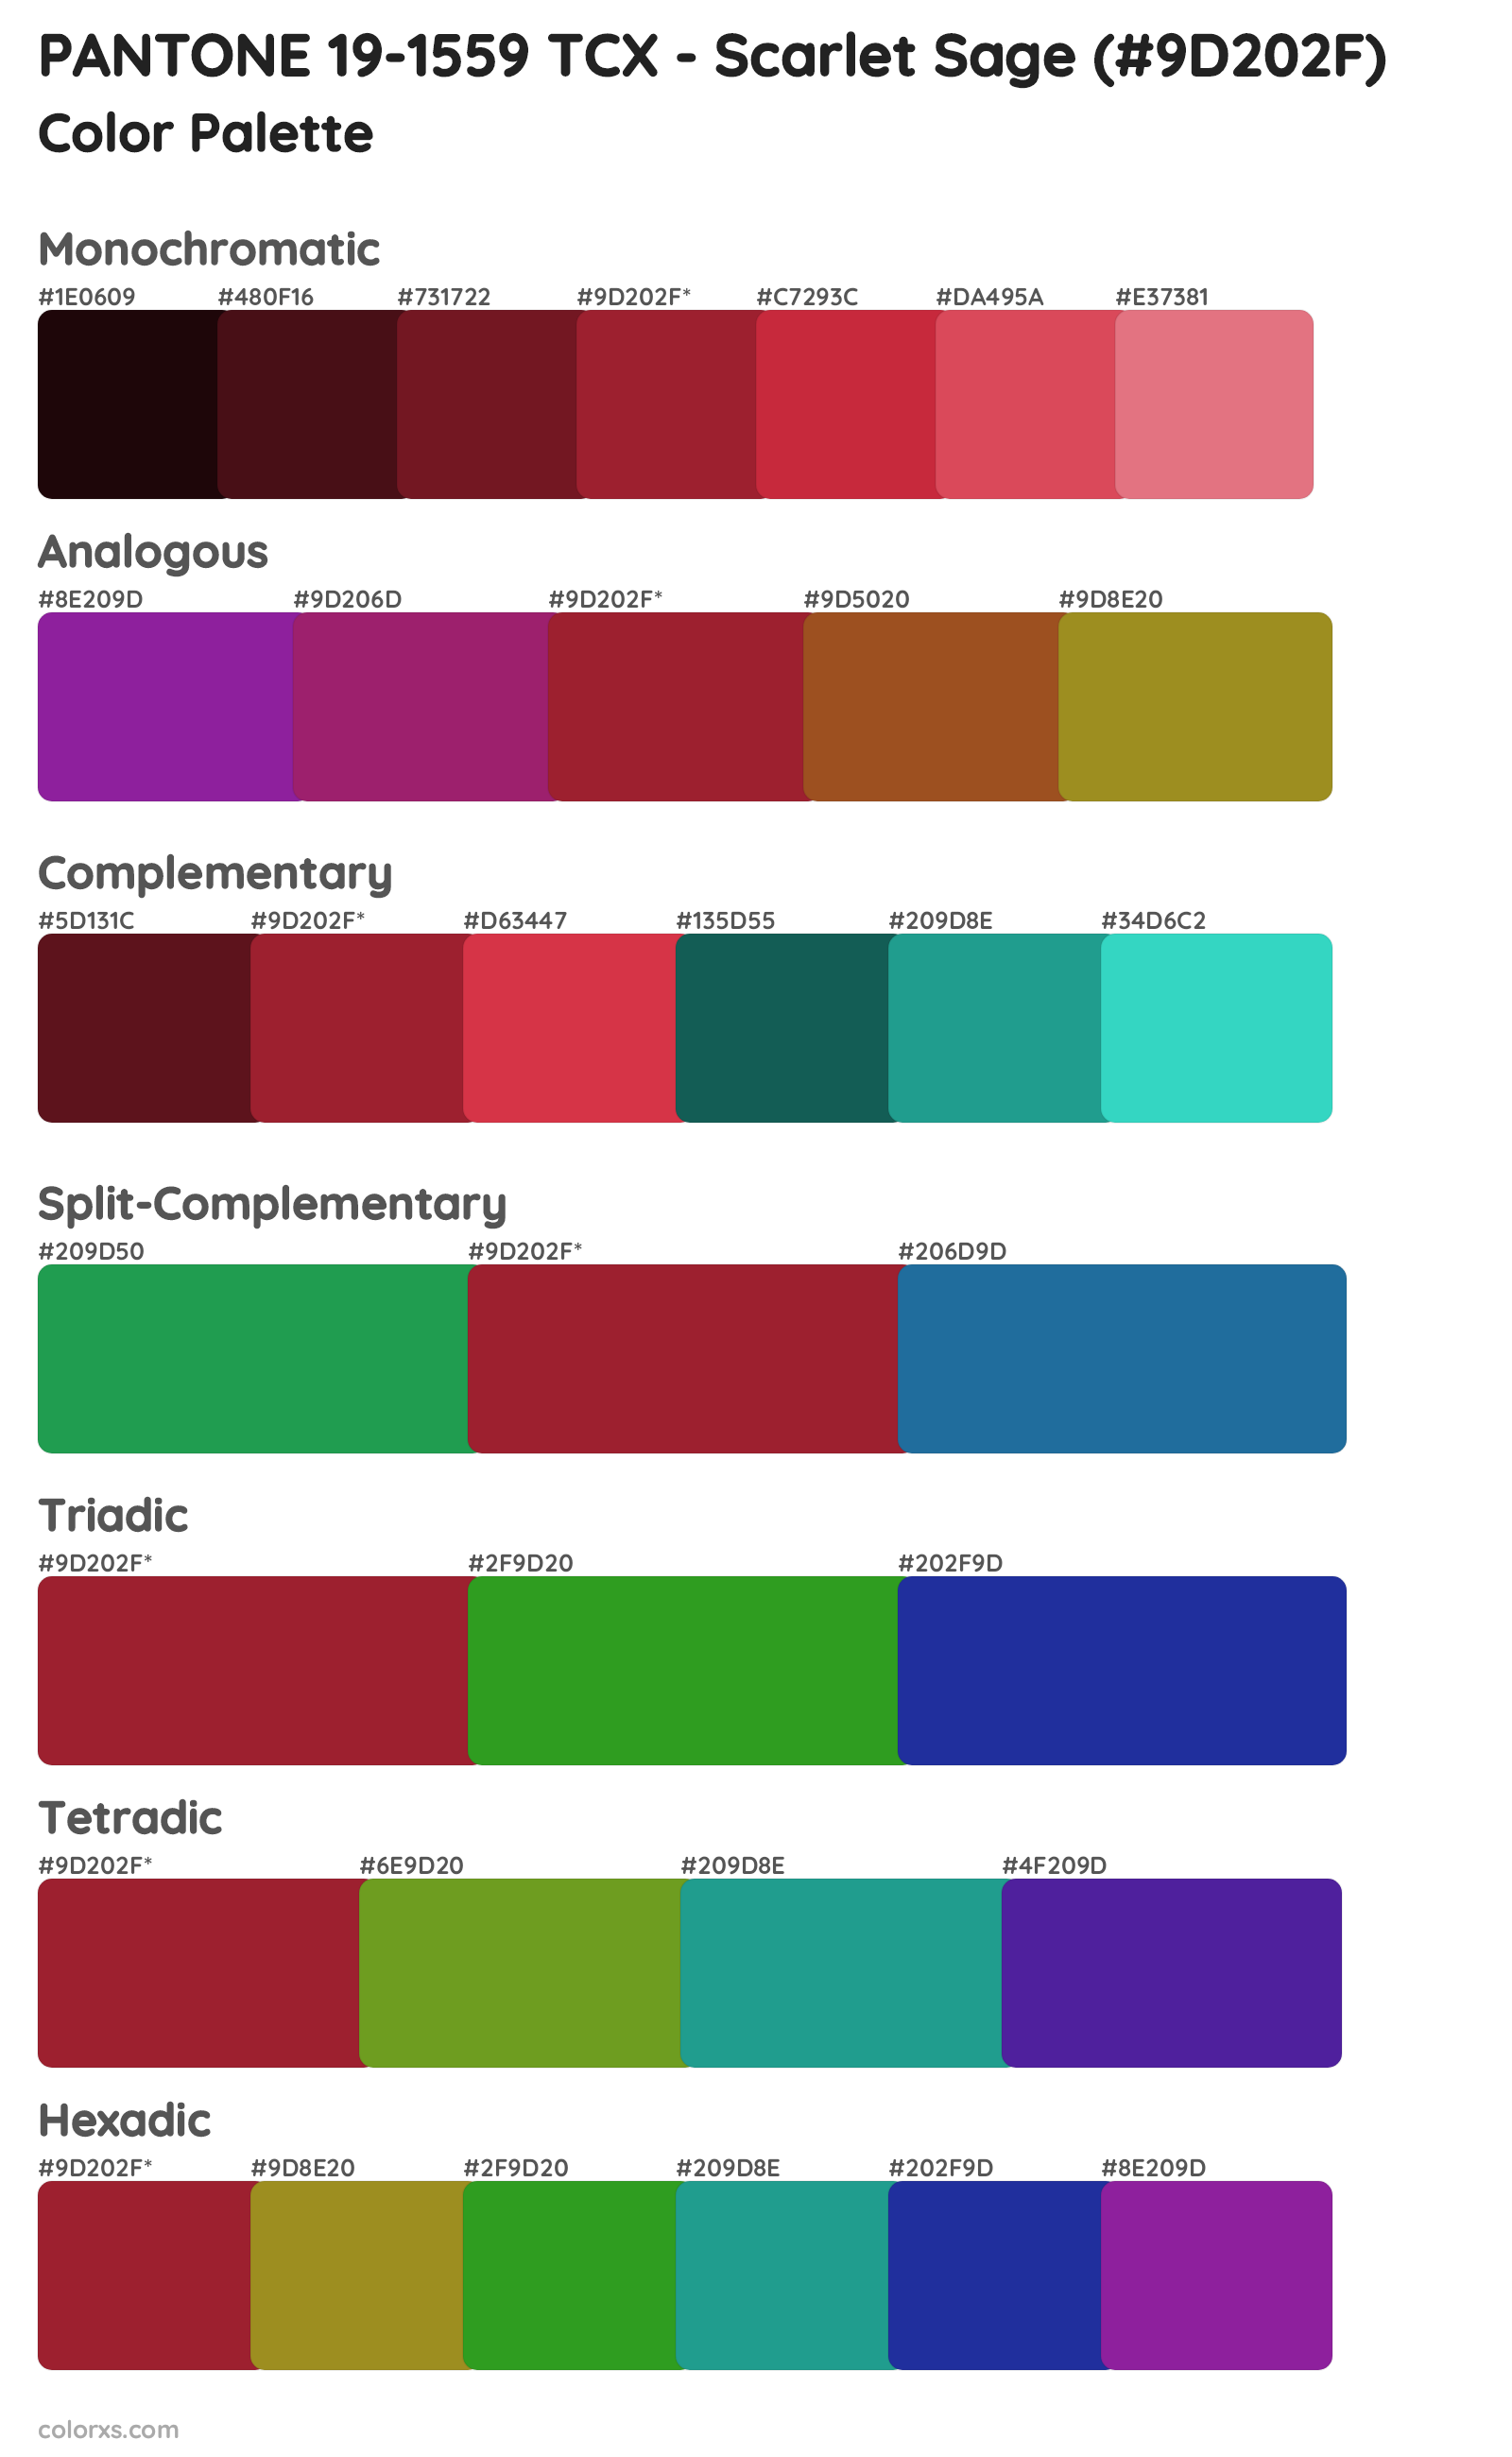 PANTONE 19-1559 TCX - Scarlet Sage Color Scheme Palettes